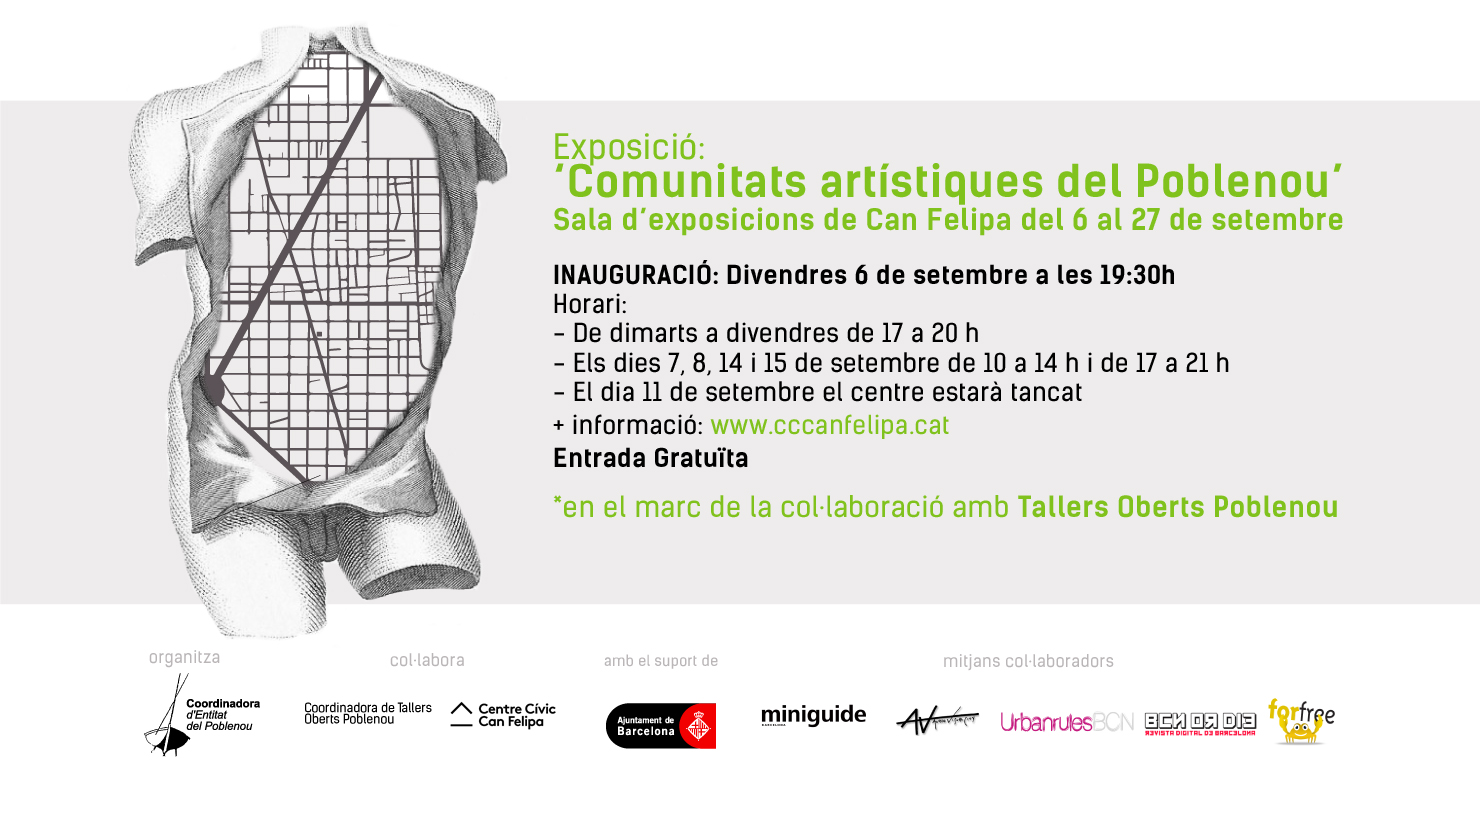 Expo: Comunitats artístiques del Poblenou @ Can Felipa